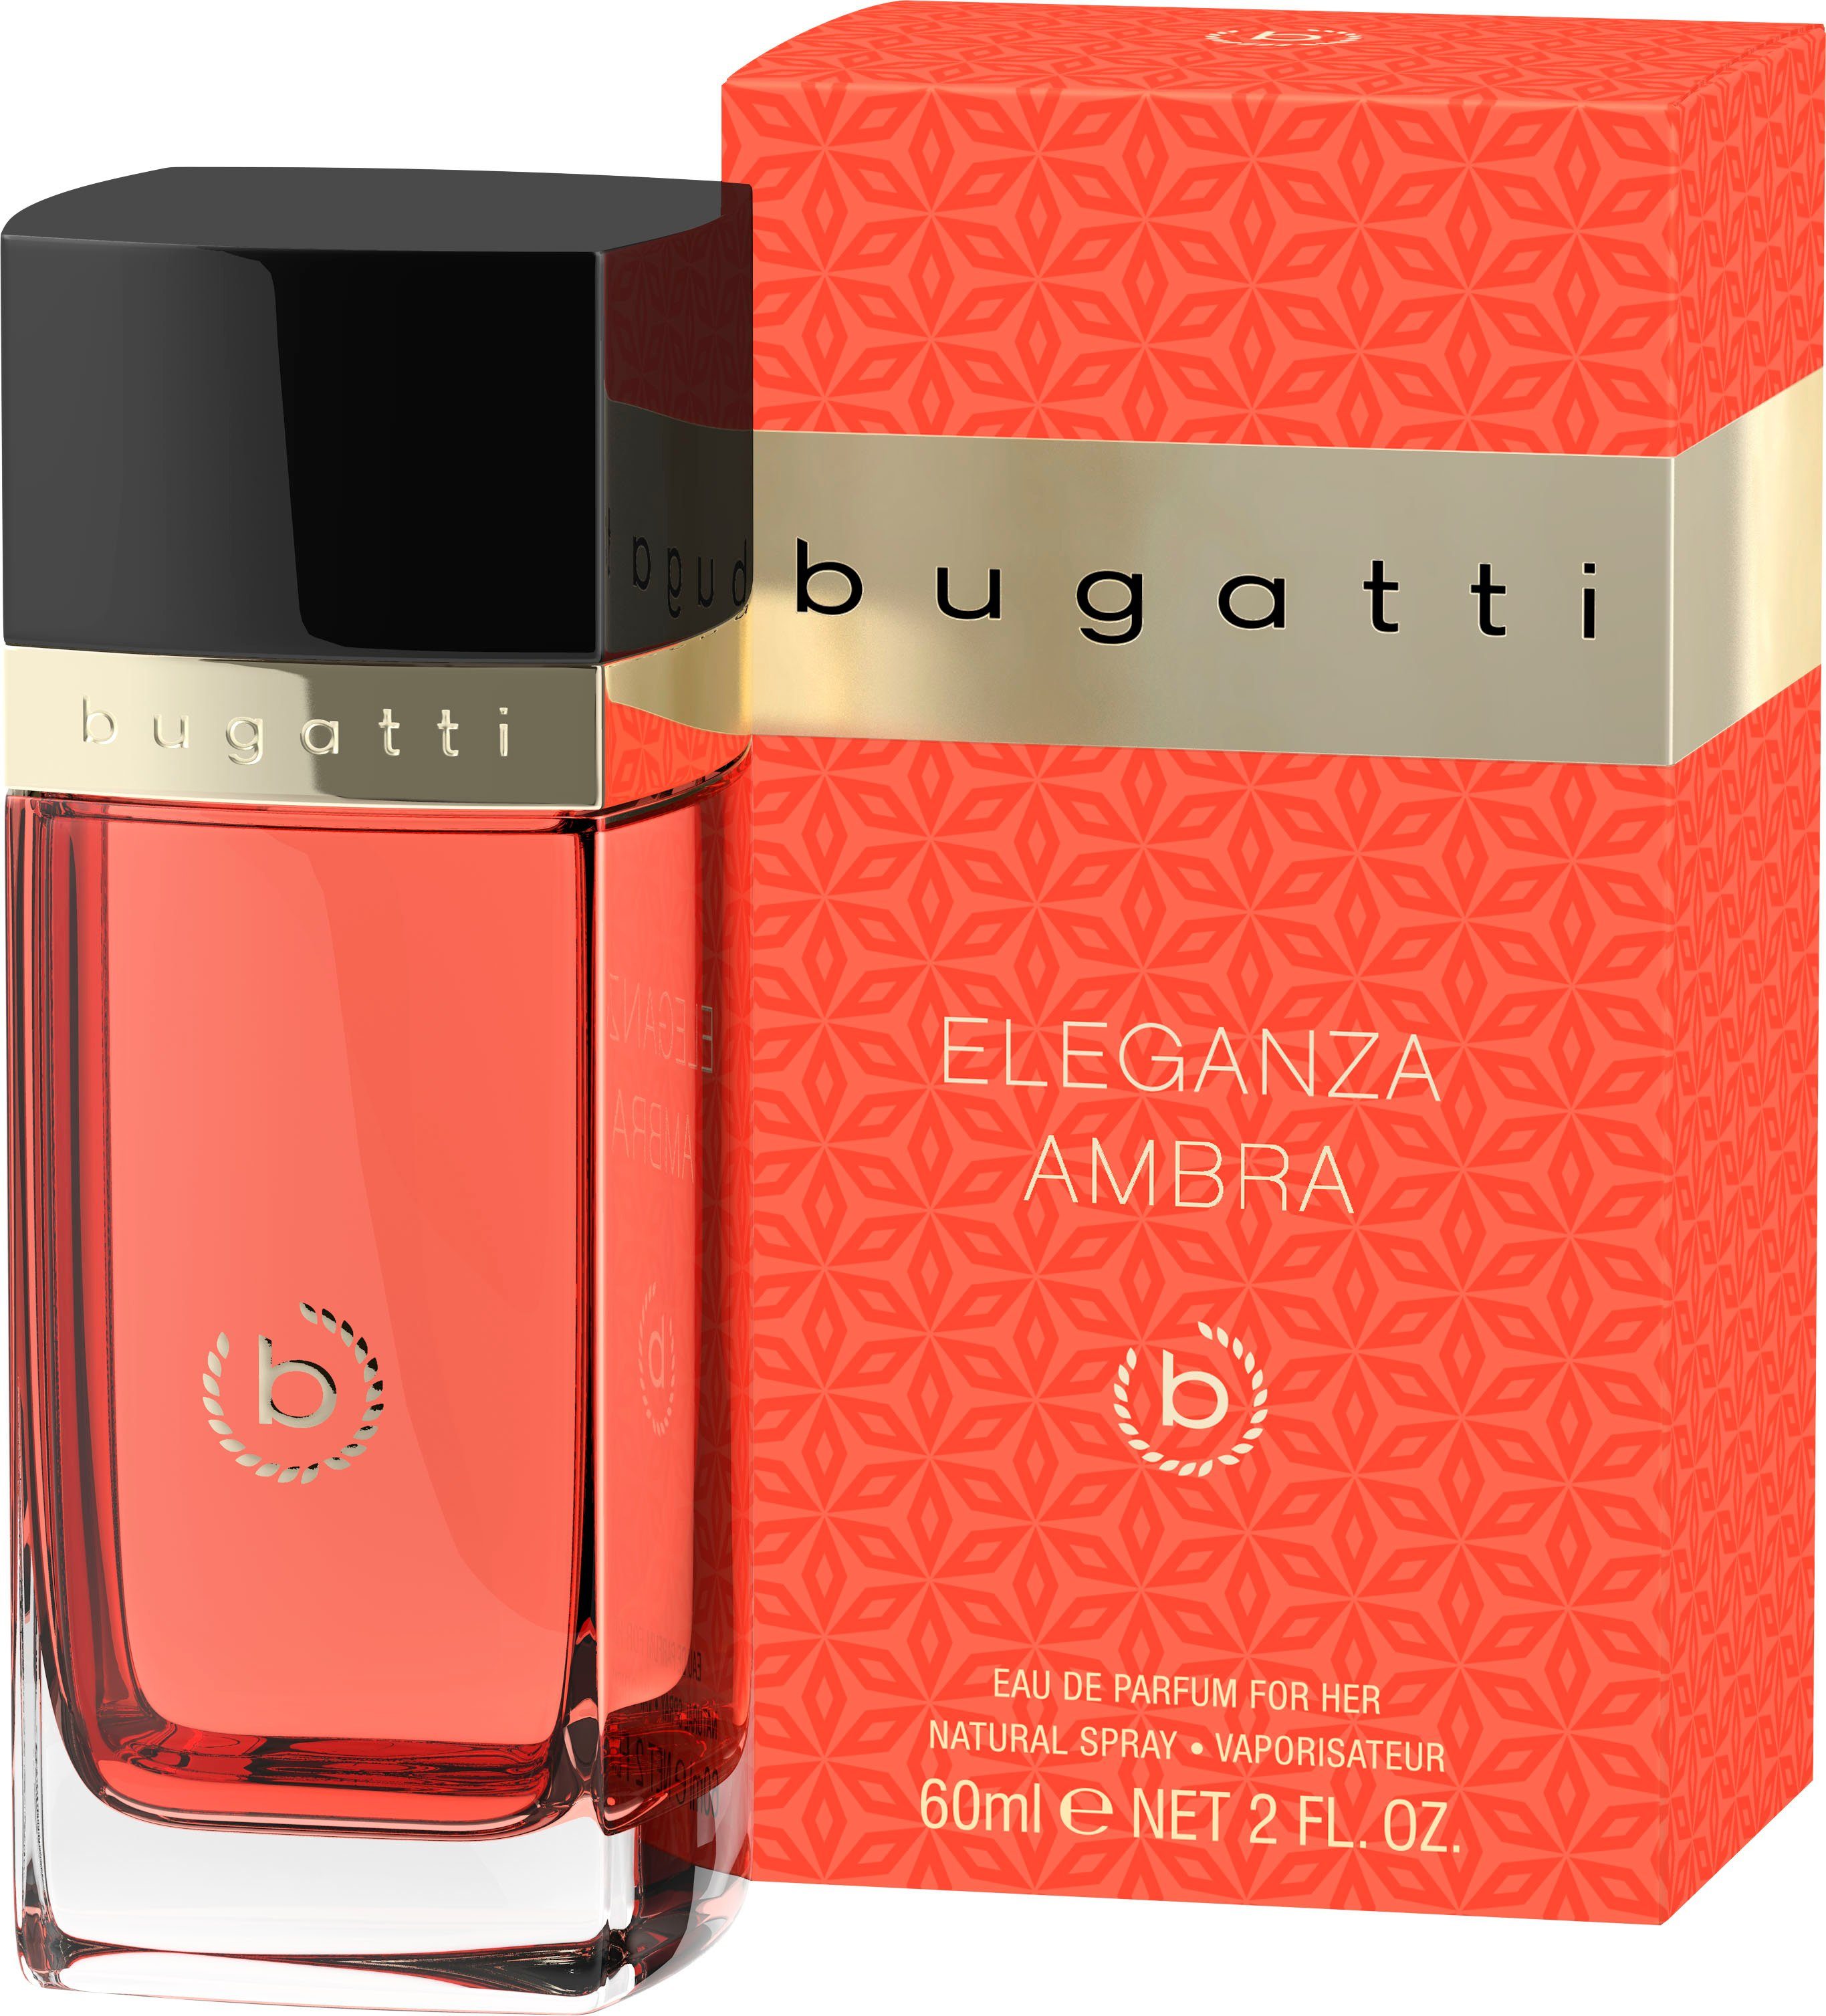 bugatti Eau de EdP for 60 her Parfum BUGATTI Ambra Eleganza ml